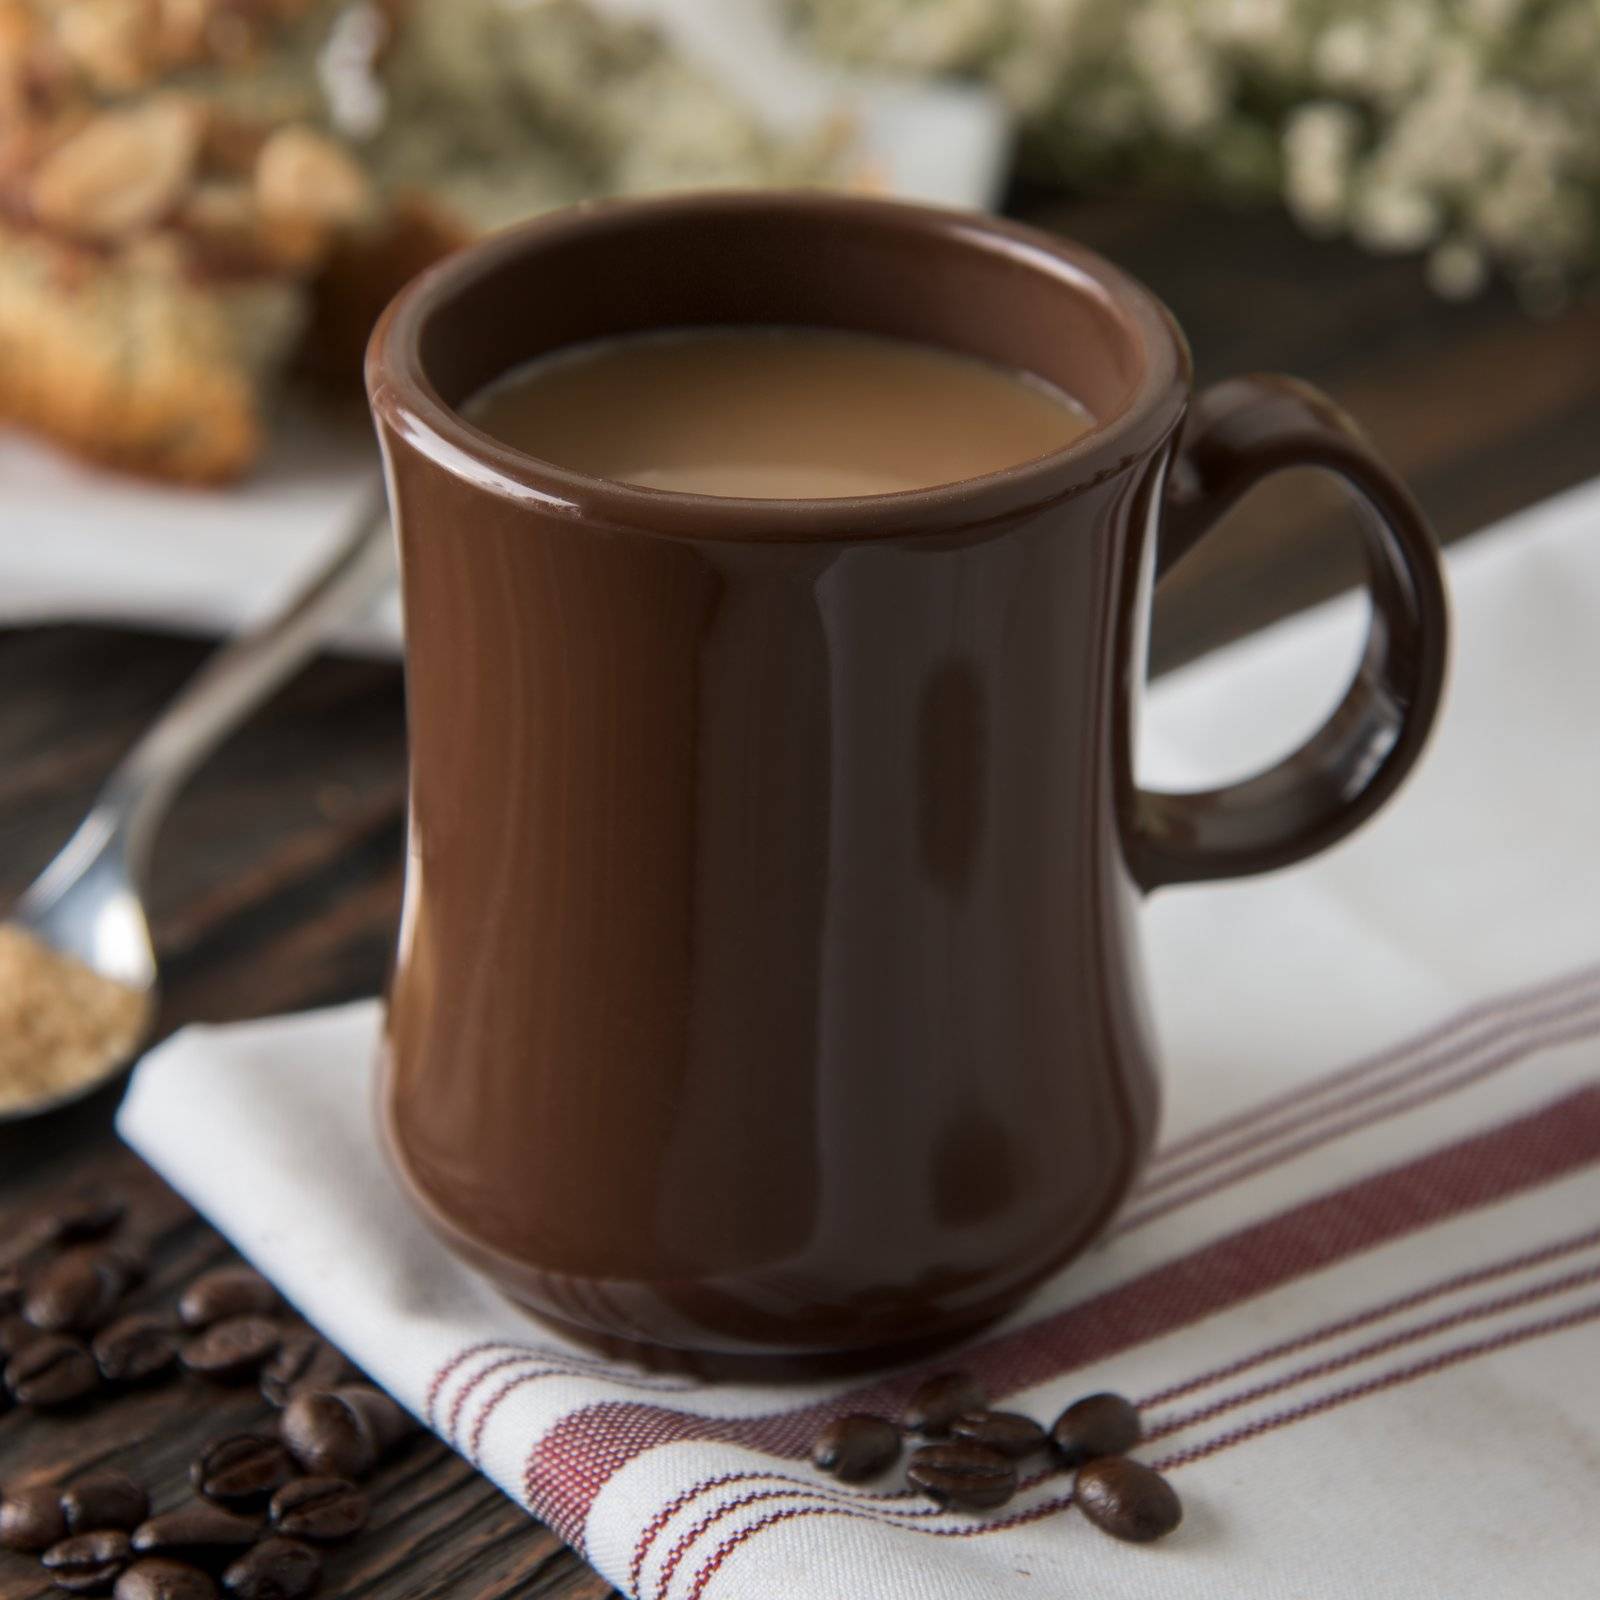 Мокачино (кофе с шоколадом): состав, рецепт в турке и кофемашине